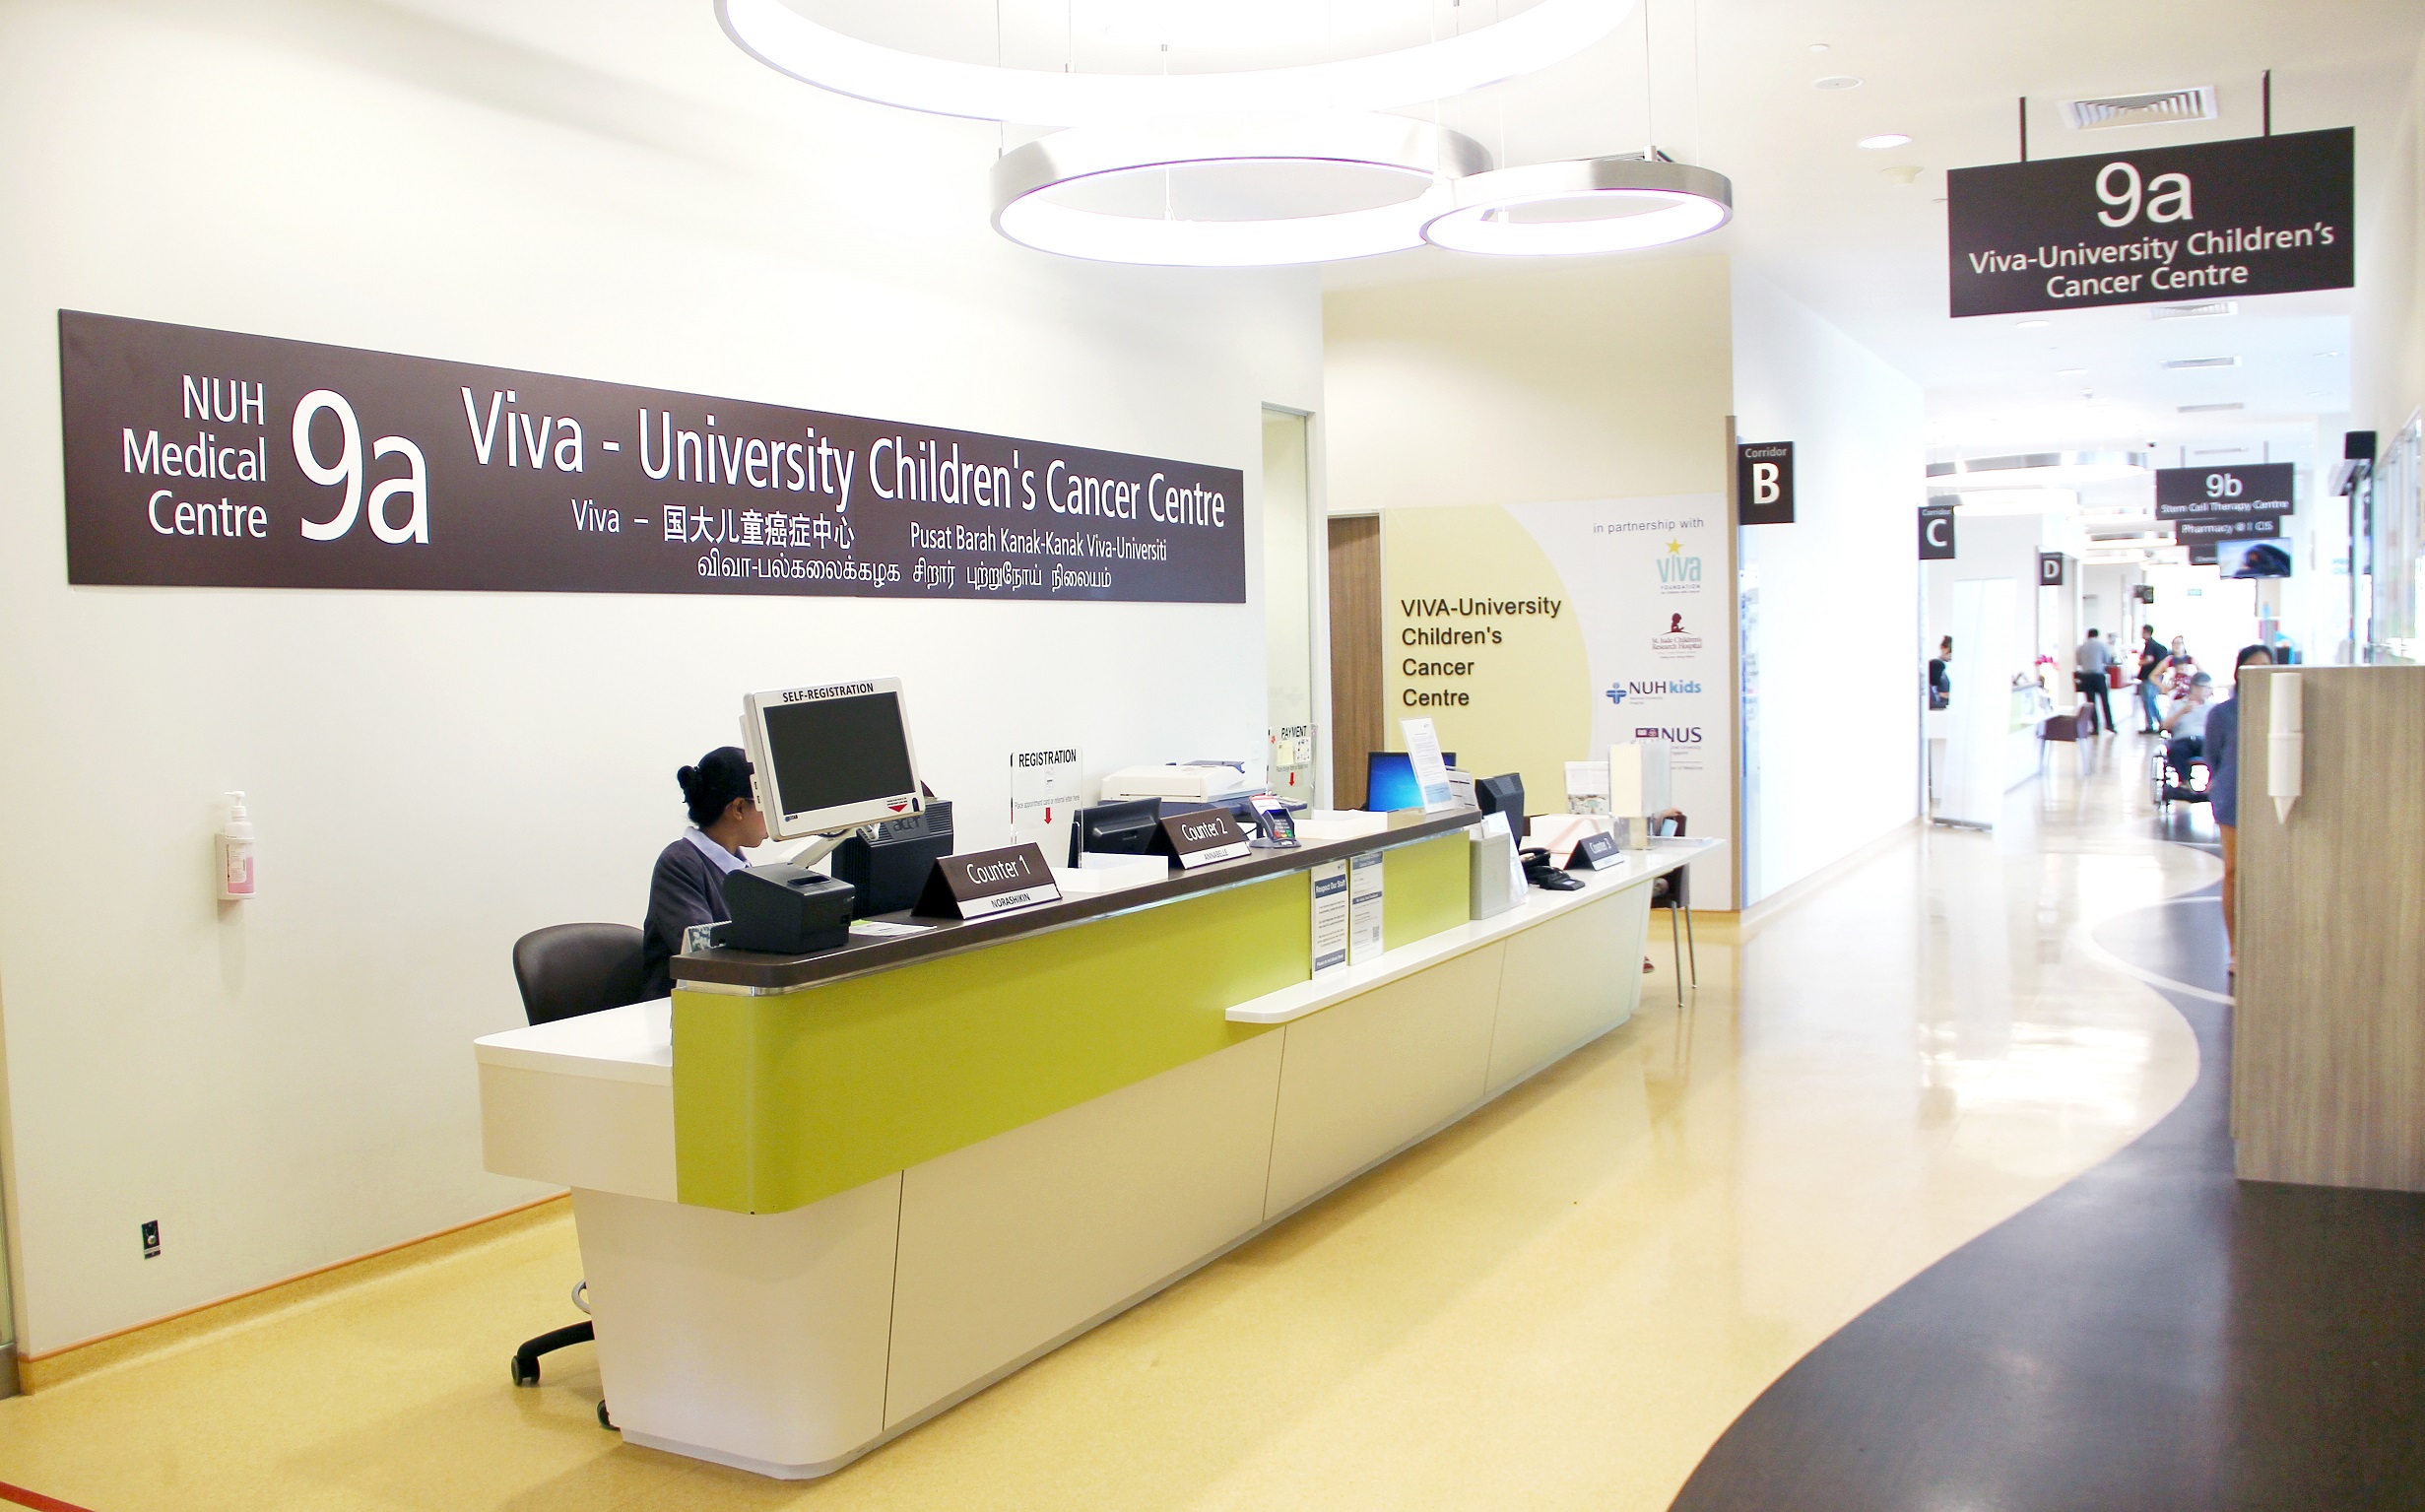 Viva-University Children’s Cancer Centre